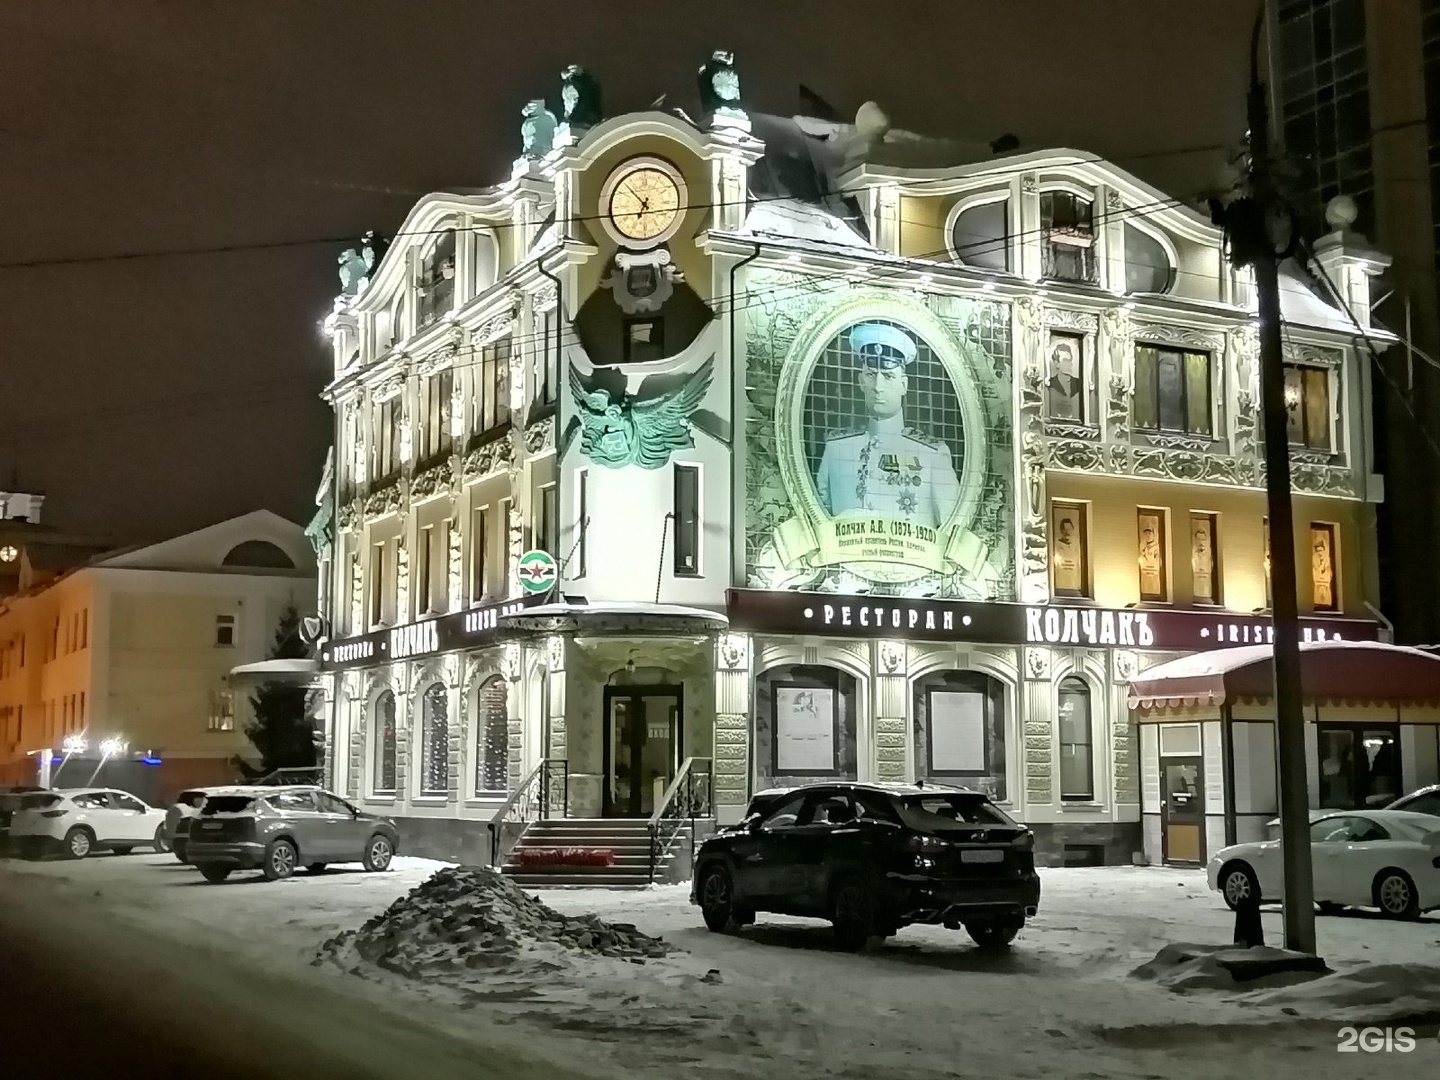 Бар-ресторан Колчак в Омске фото 4 этажа